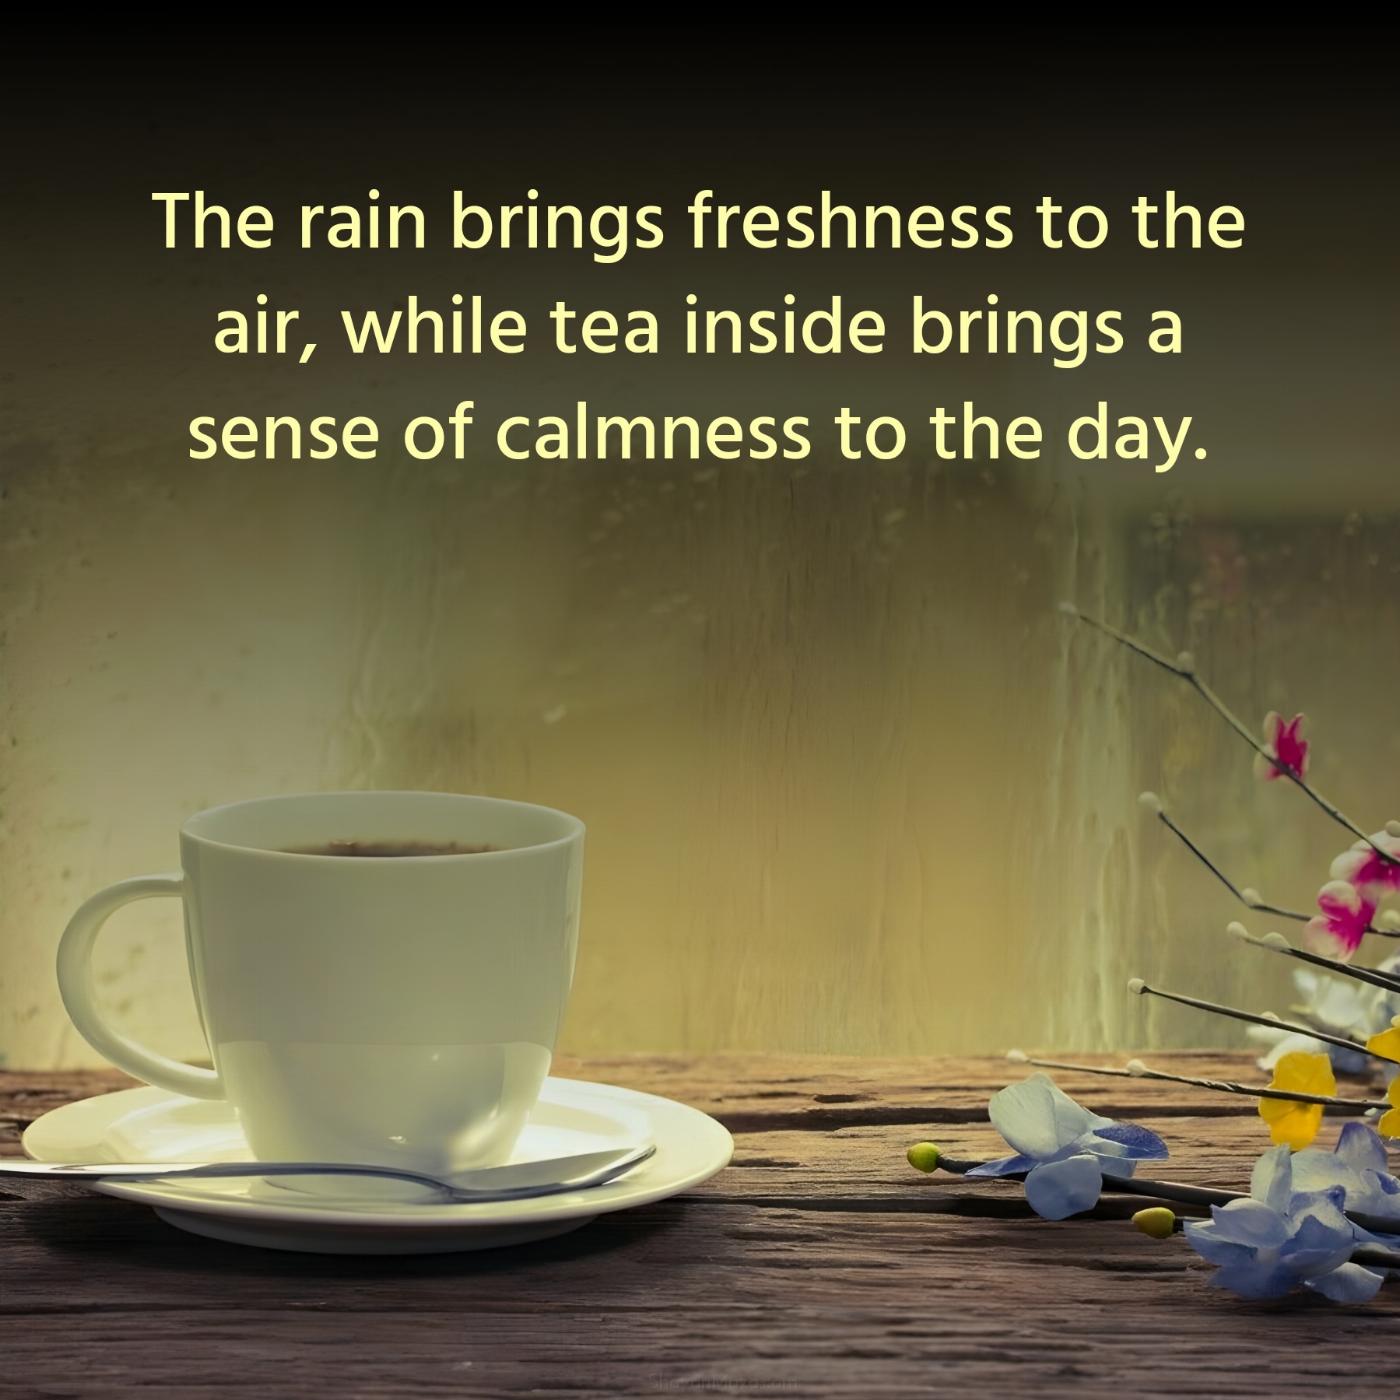 The rain brings freshness to the air while tea inside brings a sense of calmness